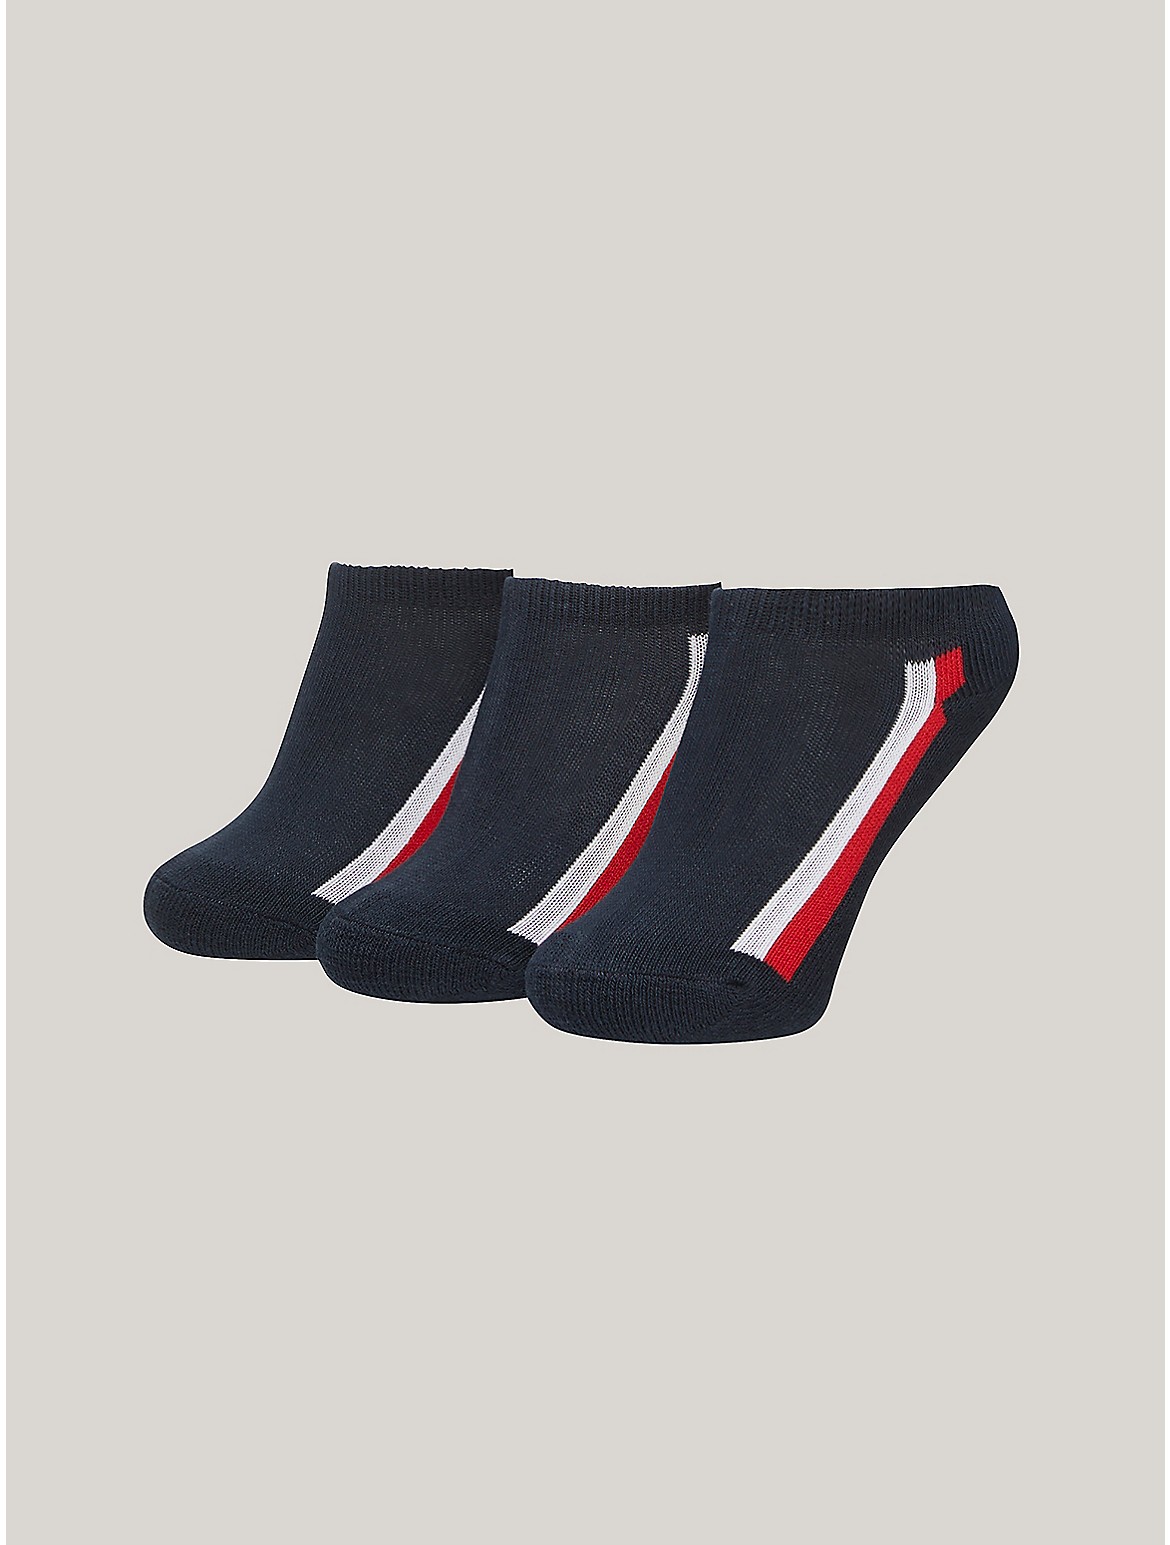 Tommy Hilfiger Boys' Kids' Ankle Sock 3-Pack